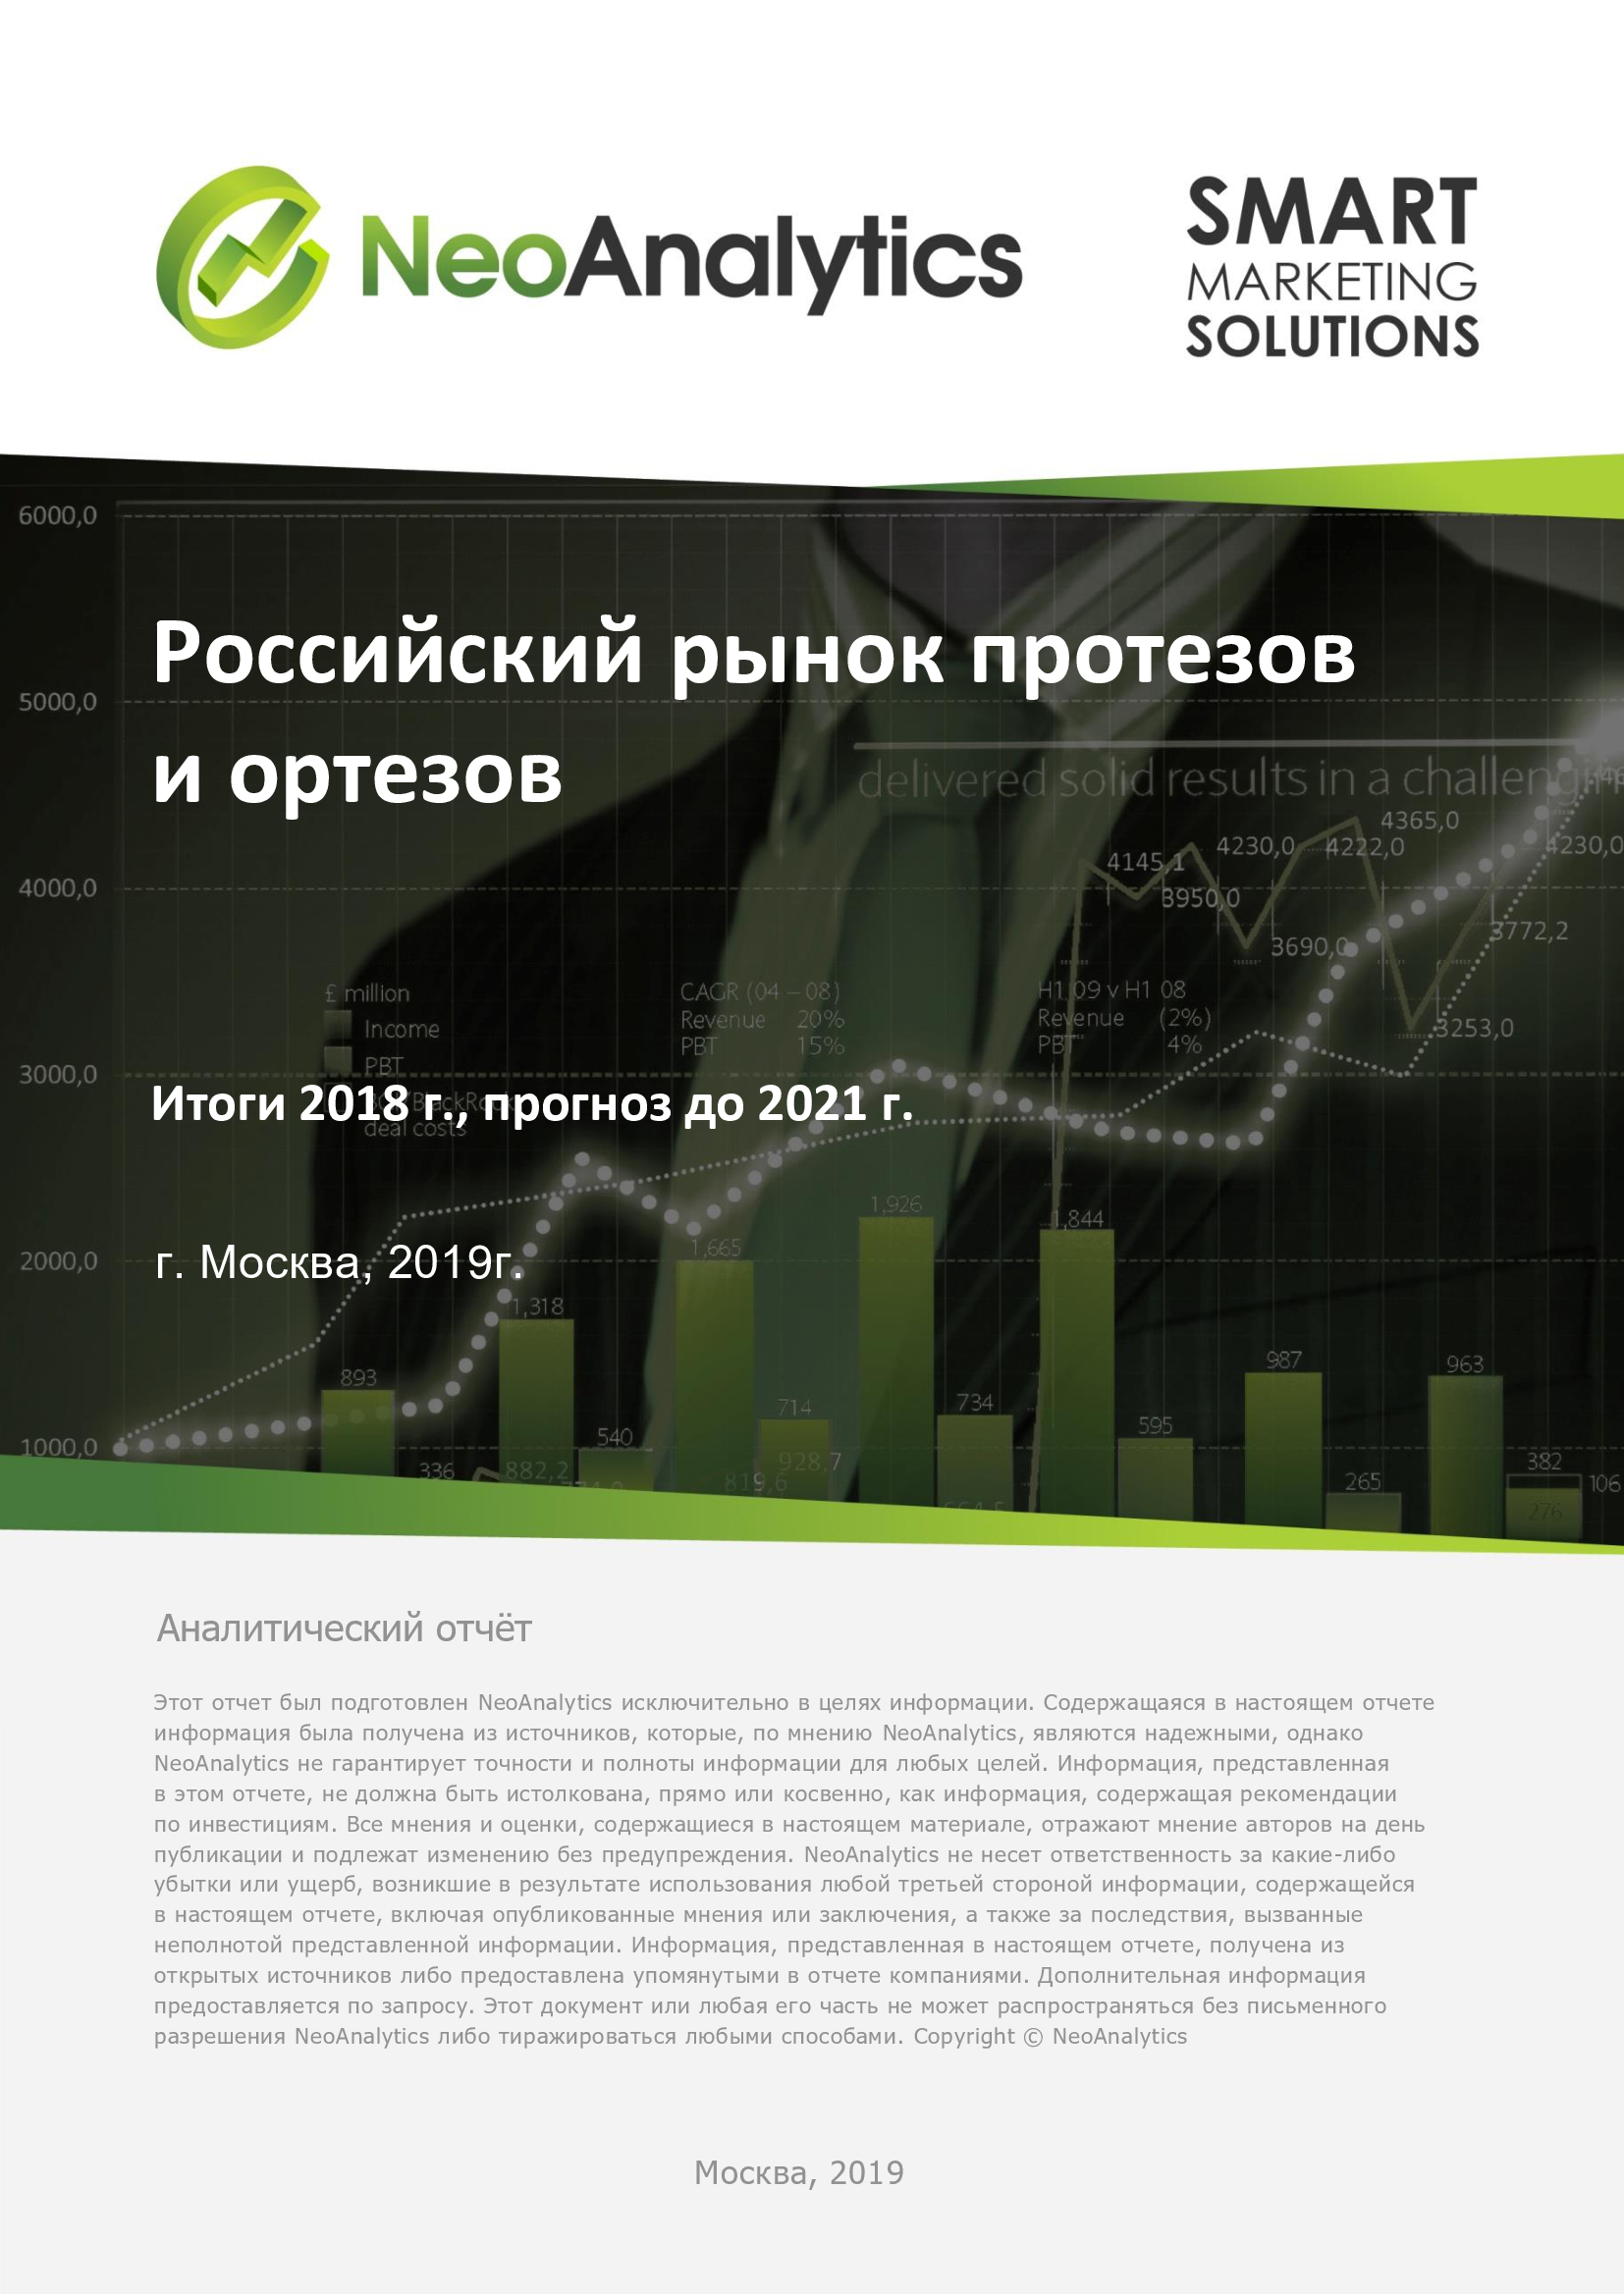 Российский рынок протезов и ортезов: итоги 2018 г., прогноз до 2021 г.